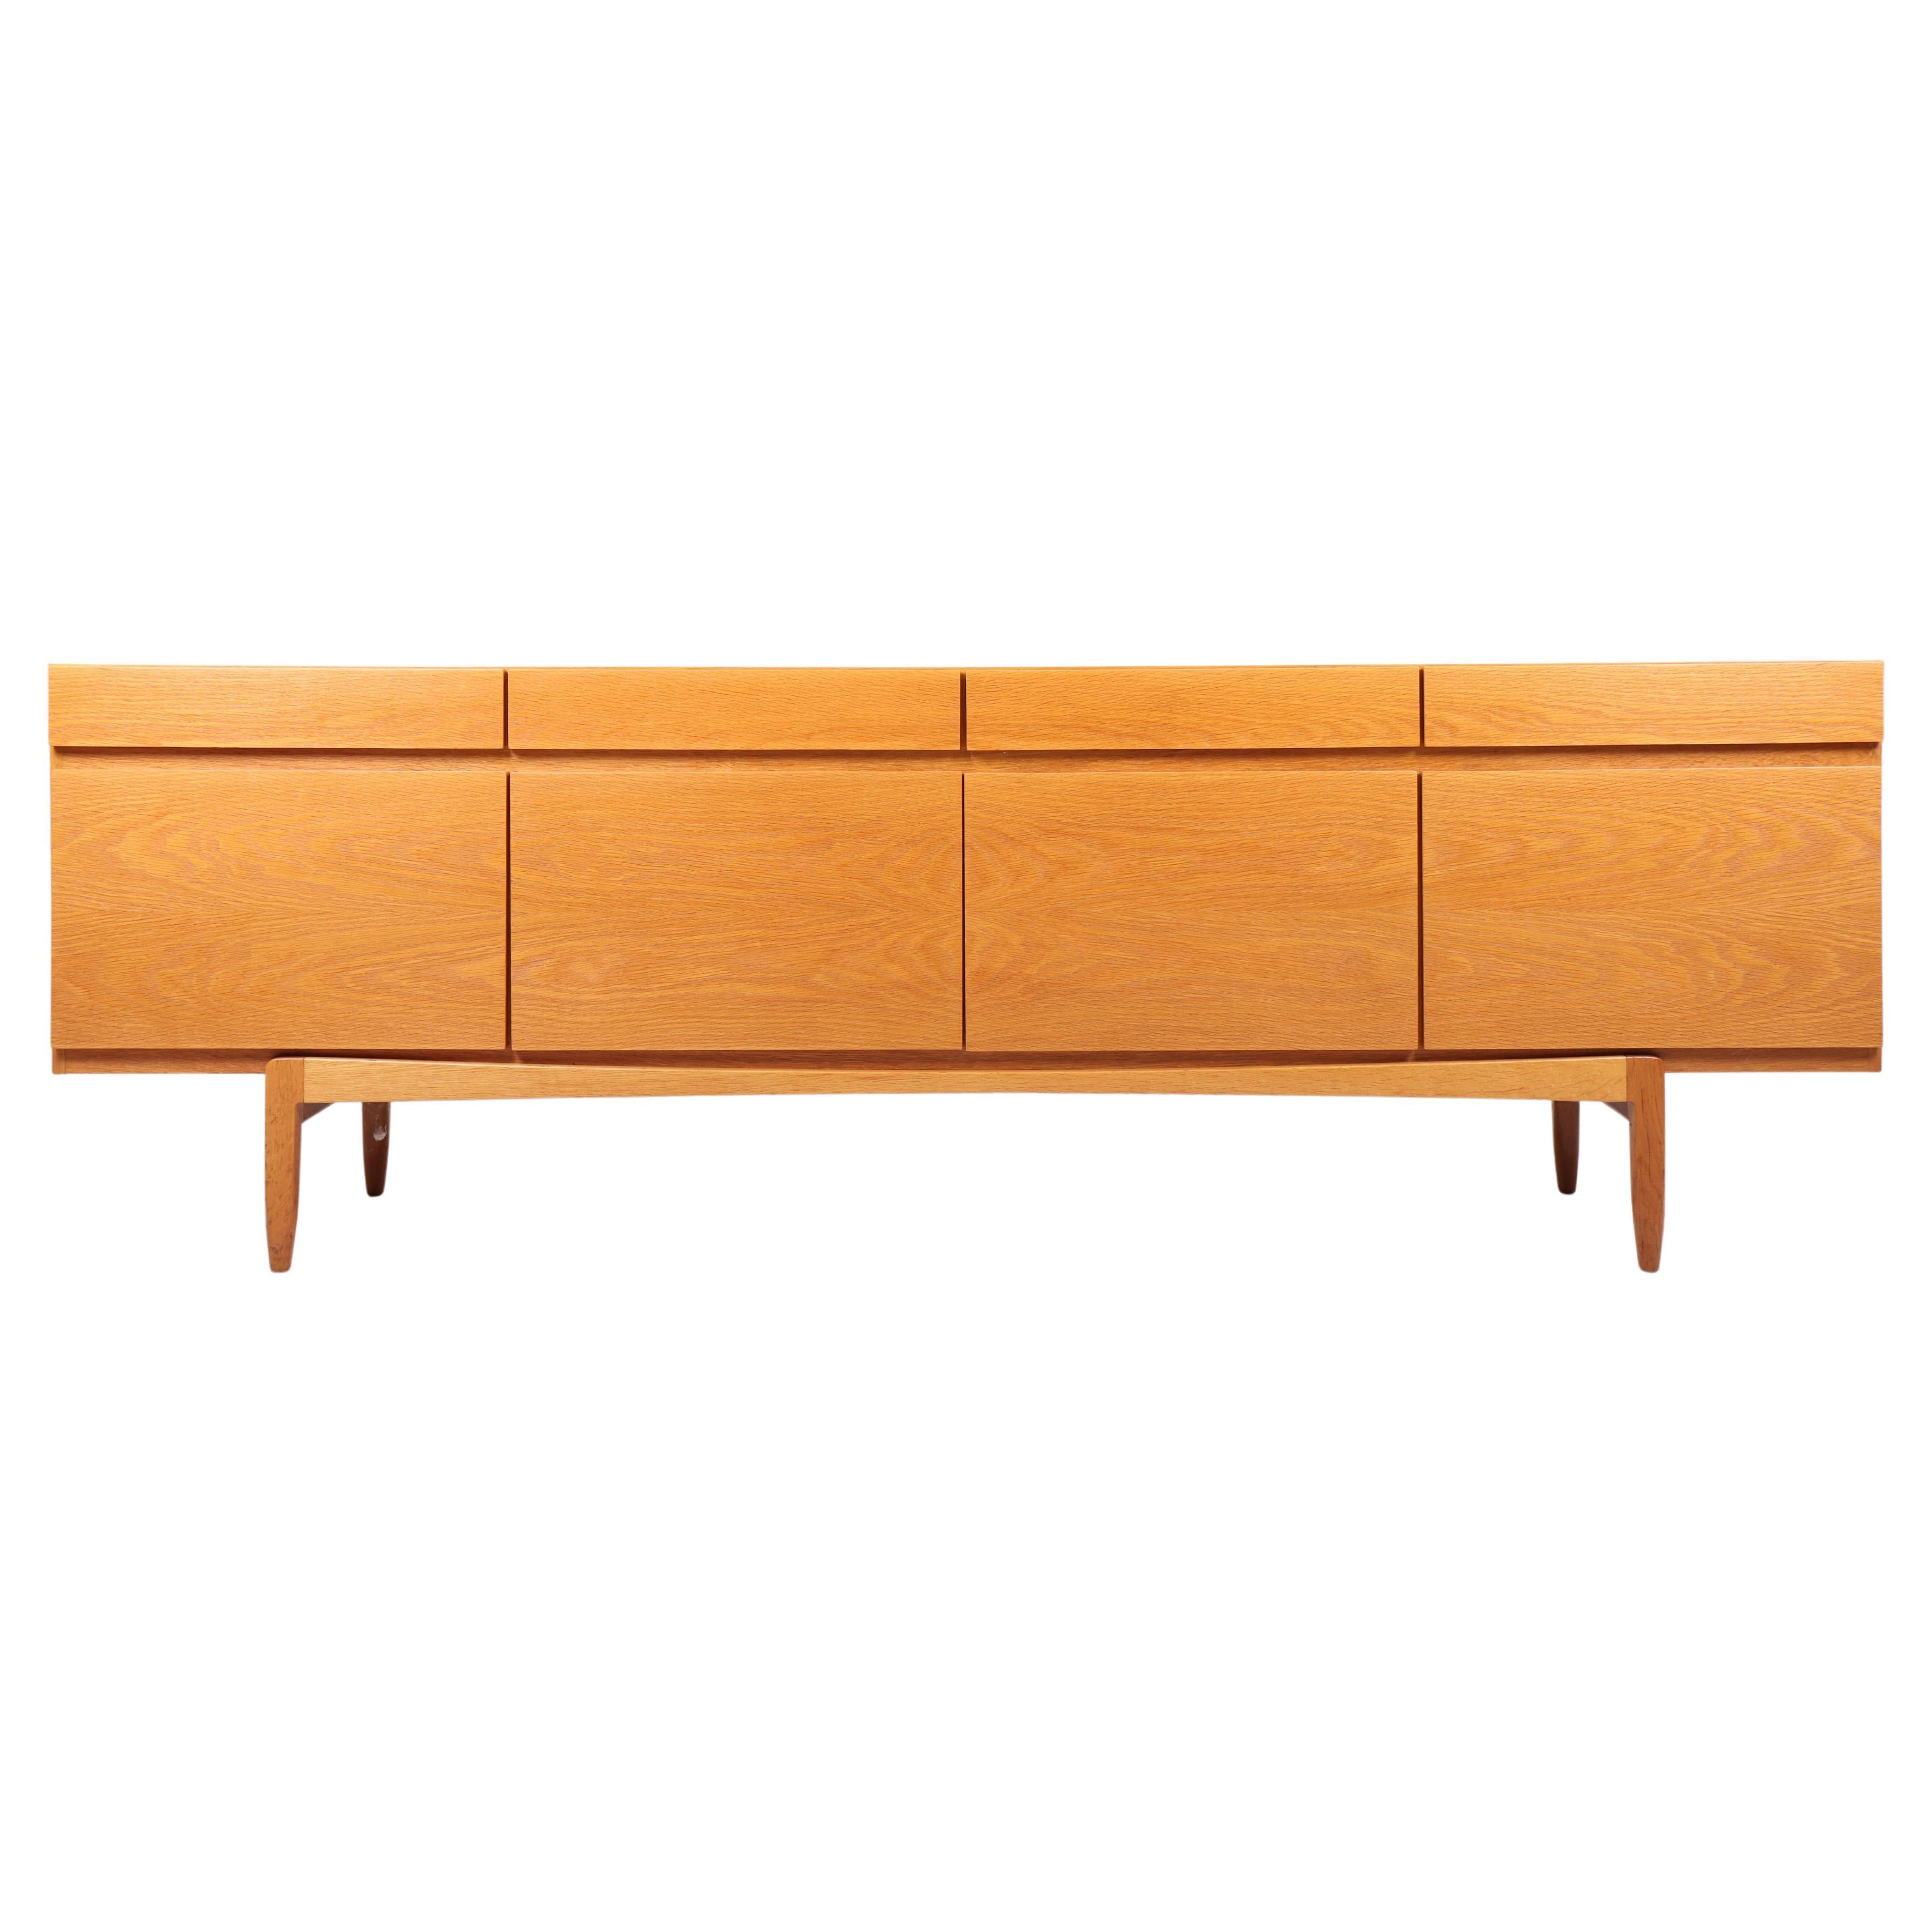 Danish Midcentury Sideboard in Oak Designed by Ib Kofod-Larsen, 1960s For Sale